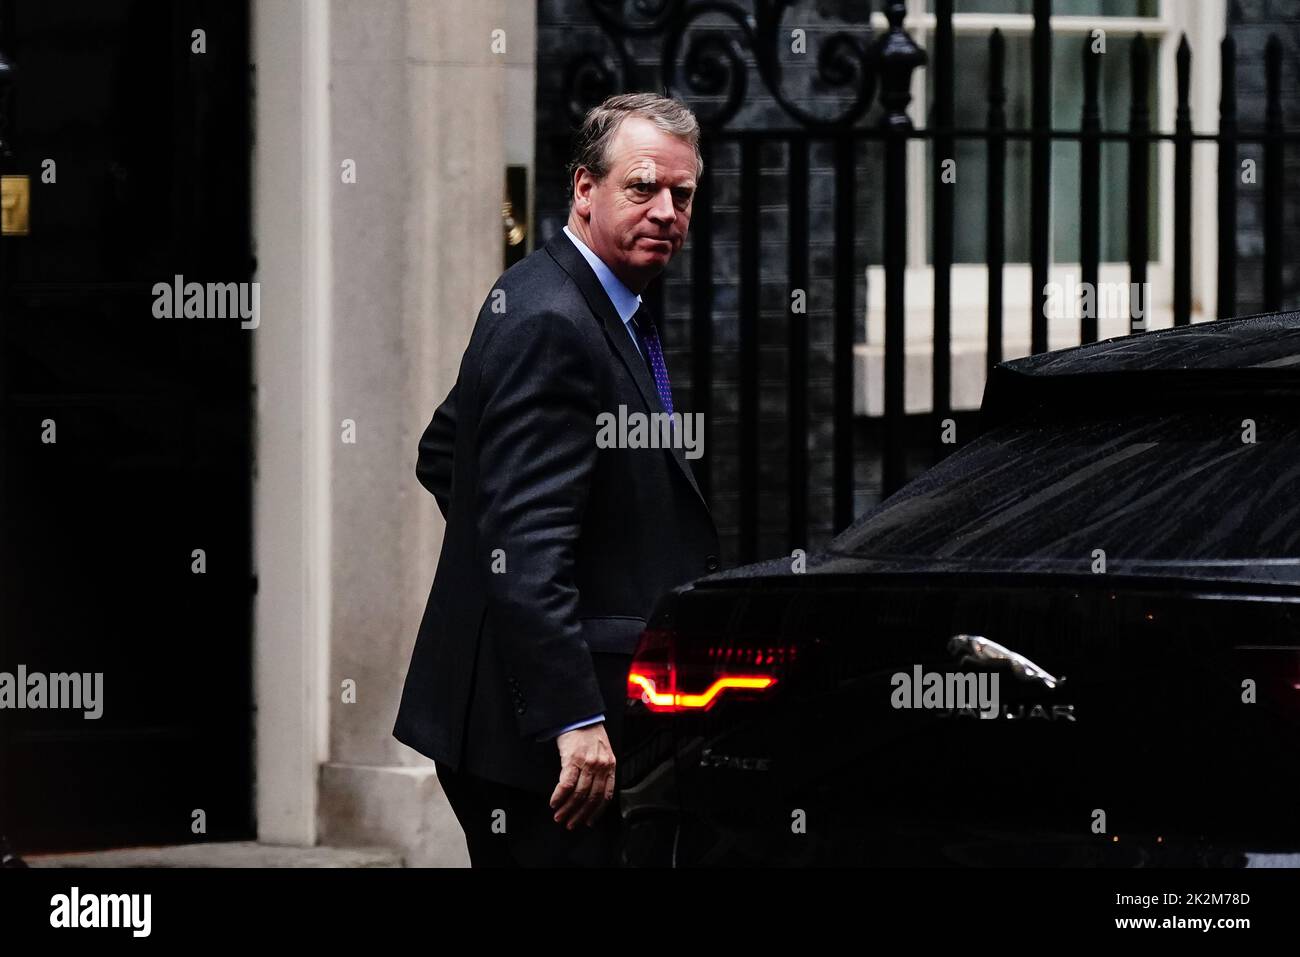 El secretario escocés Alister Jack llega a una reunión de gabinete en 10 Downing Street, Londres, antes de un anuncio de mini-presupuesto por parte del ministro de Hacienda Kwasi Kwarteng. Fecha de la foto: Viernes 23 de septiembre de 2022. Foto de stock